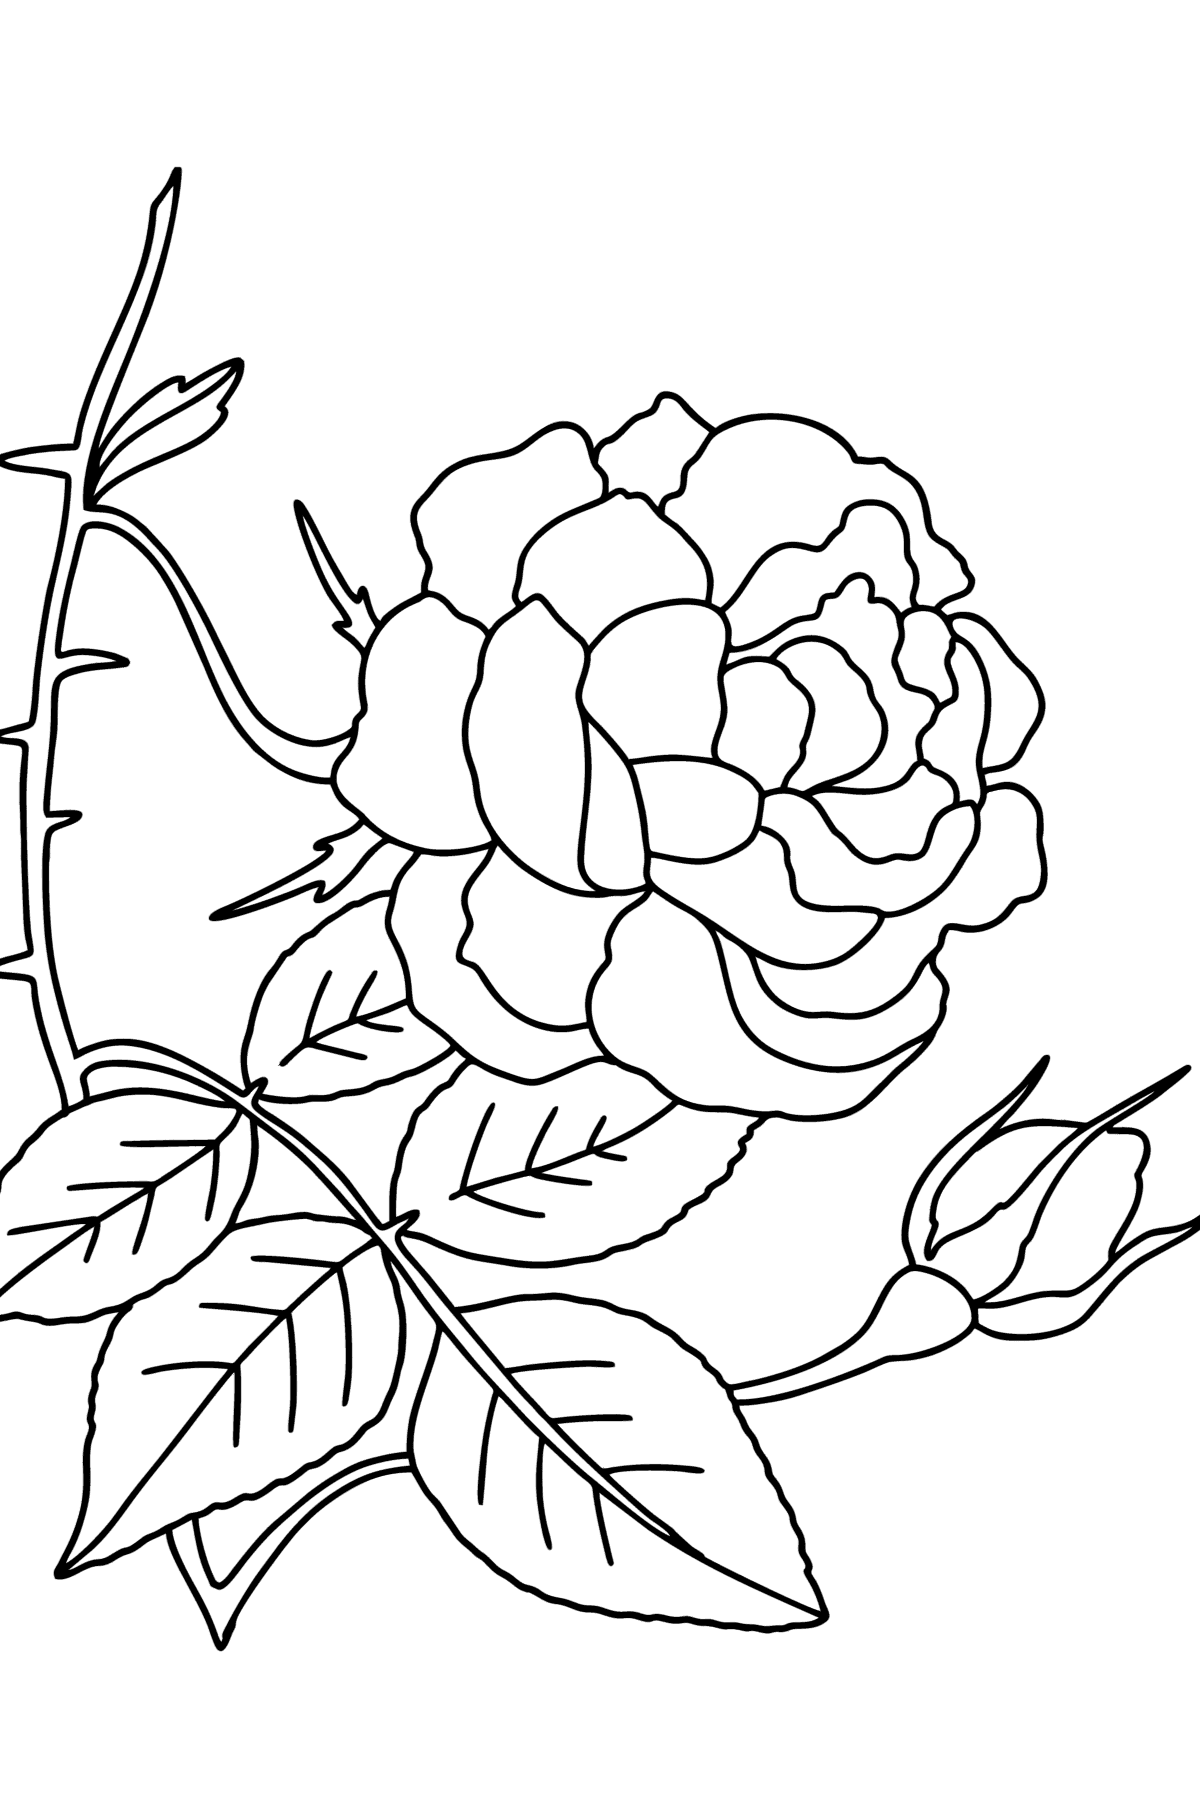 Tegning til farvning klatrende roserød - Tegninger til farvelægning for børn